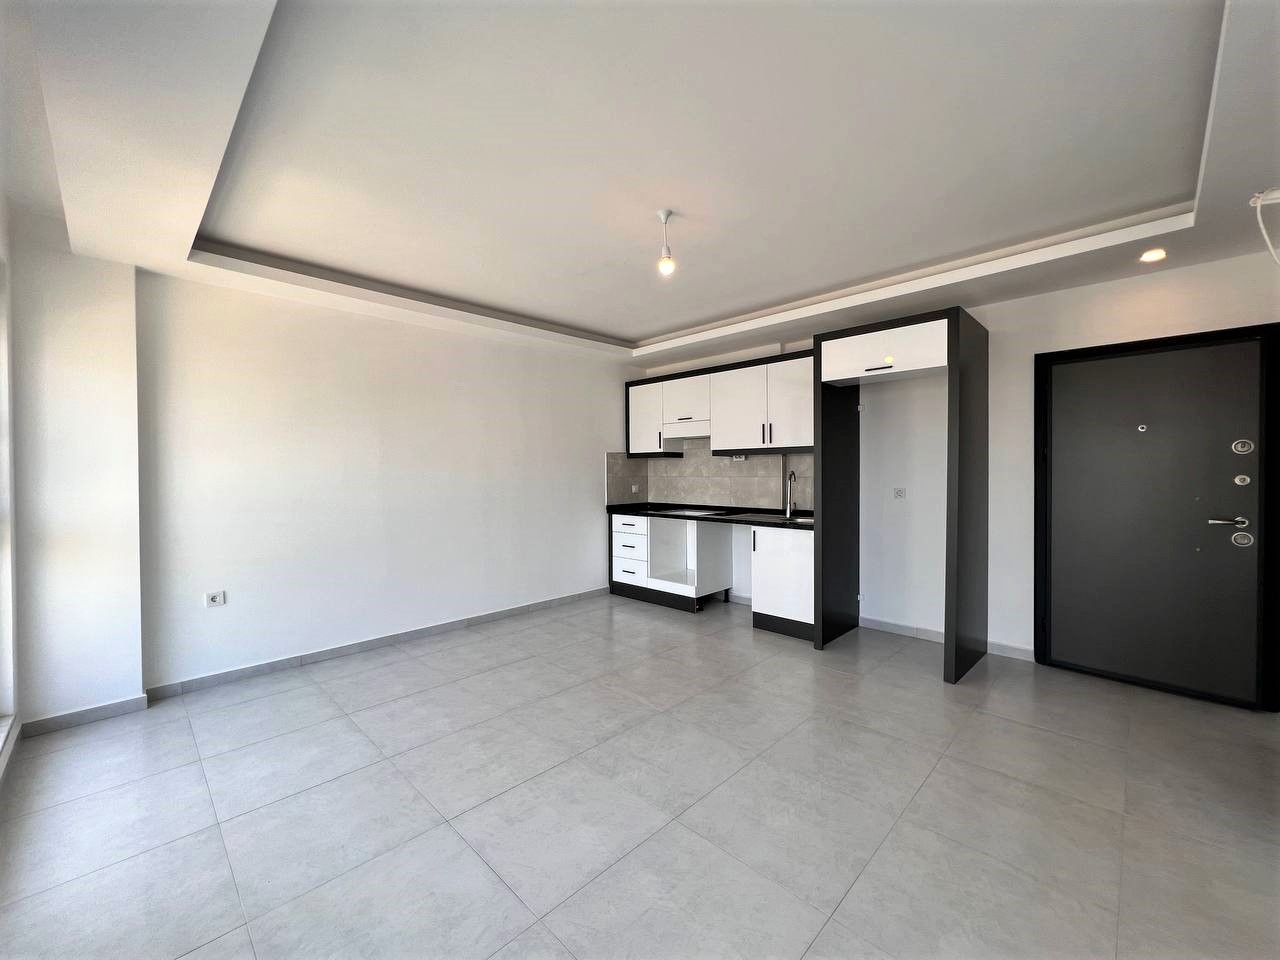 1-bedroom apartment in new building - Alanya, Avsallar